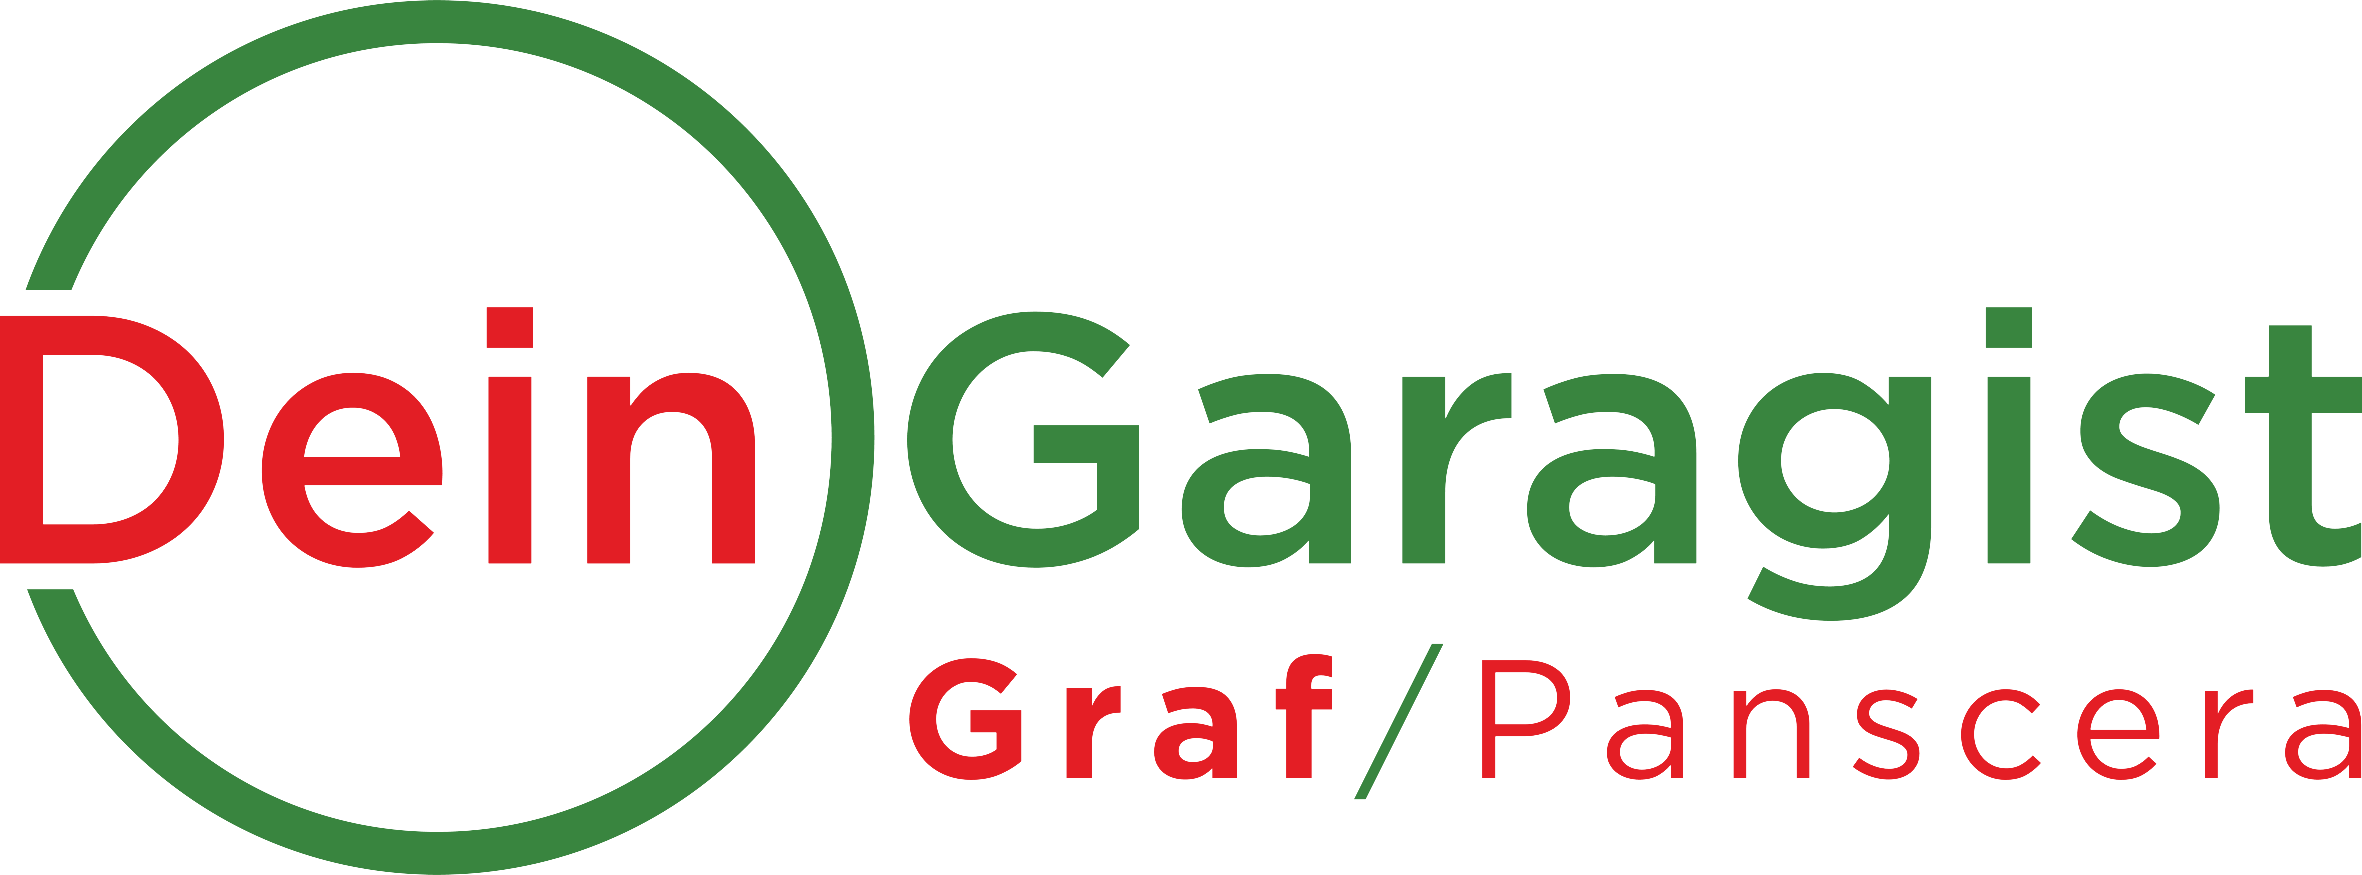 Logo Dein Garagist cropped